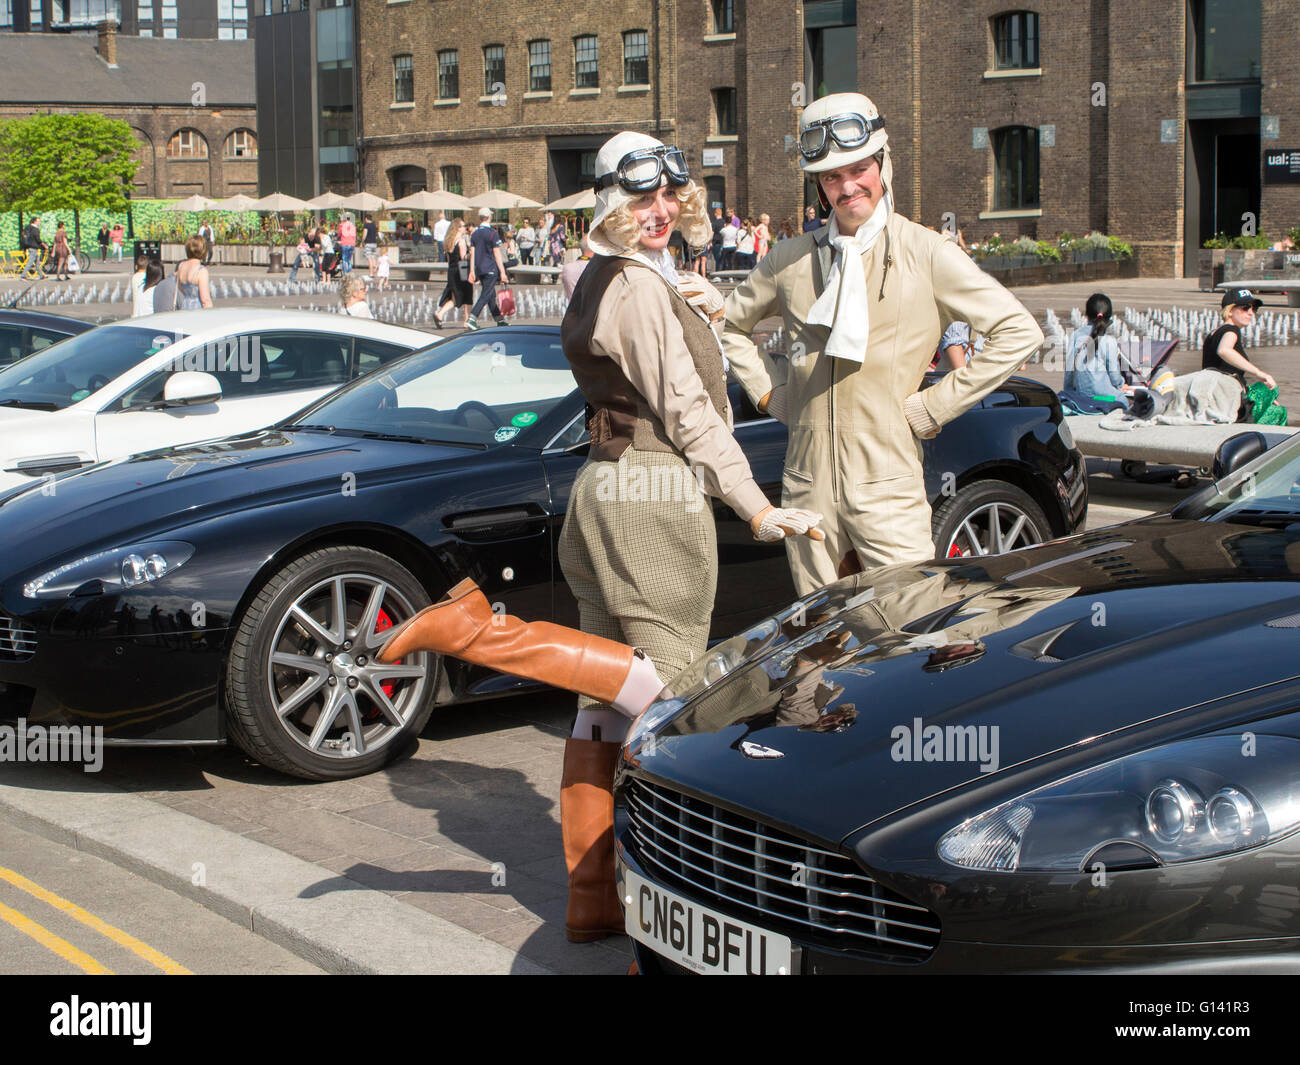 Londres, Royaume-Uni. 8 mai, 2016. Rallye automobile club Aston Martin Grenier à Sq Kings Cross Londres Royaume-Uni. 8/5/2016 : Crédit Cabanel/Alamy Live News Banque D'Images